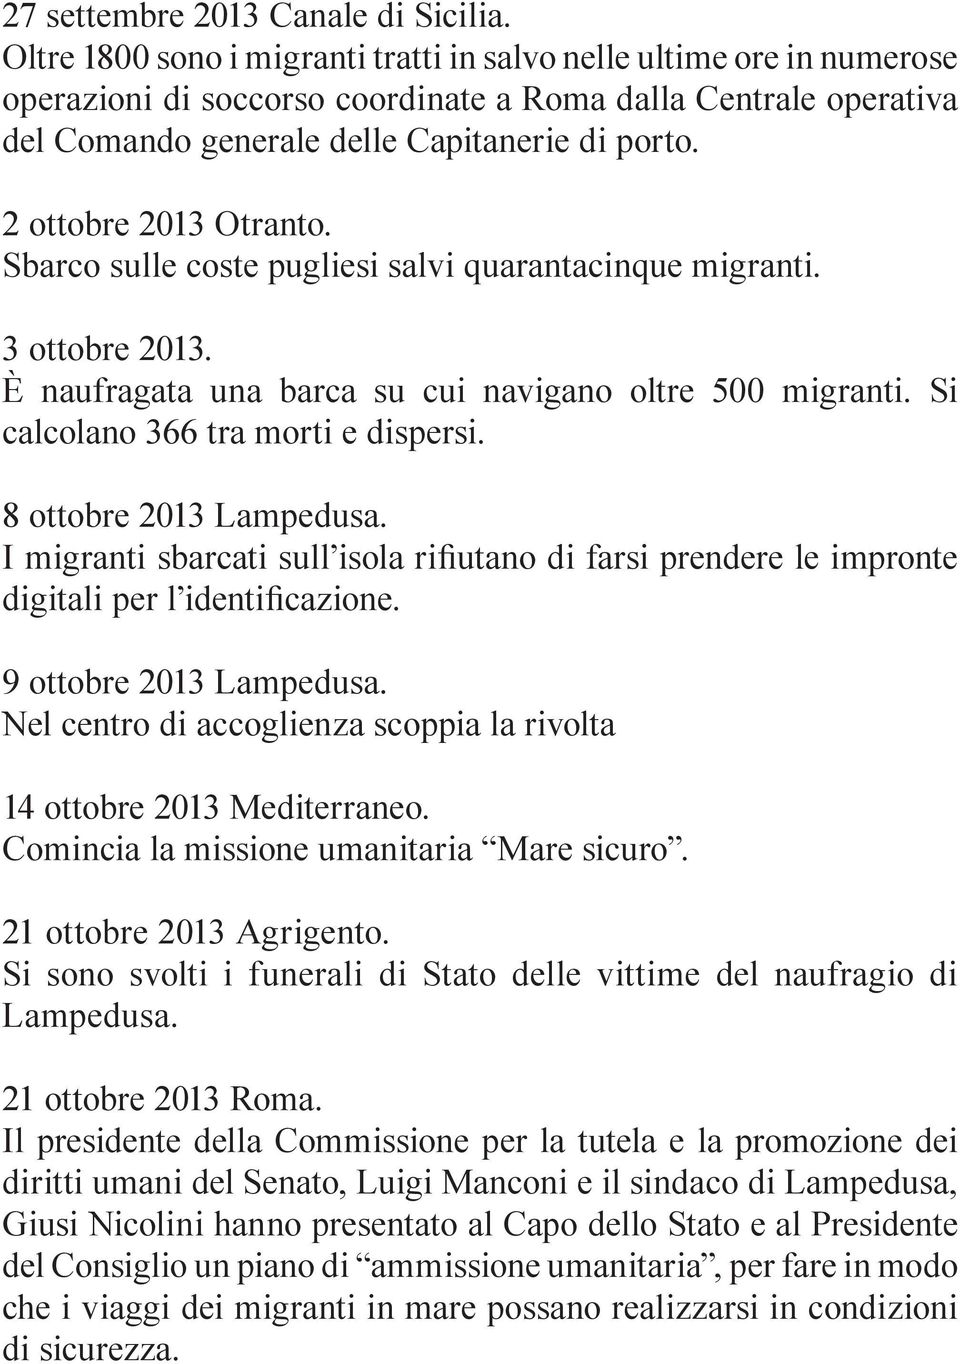 2 ottobre 2013 Otranto. Sbarco sulle coste pugliesi salvi quarantacinque migranti. 3 ottobre 2013. È naufragata una barca su cui navigano oltre 500 migranti. Si calcolano 366 tra morti e dispersi.